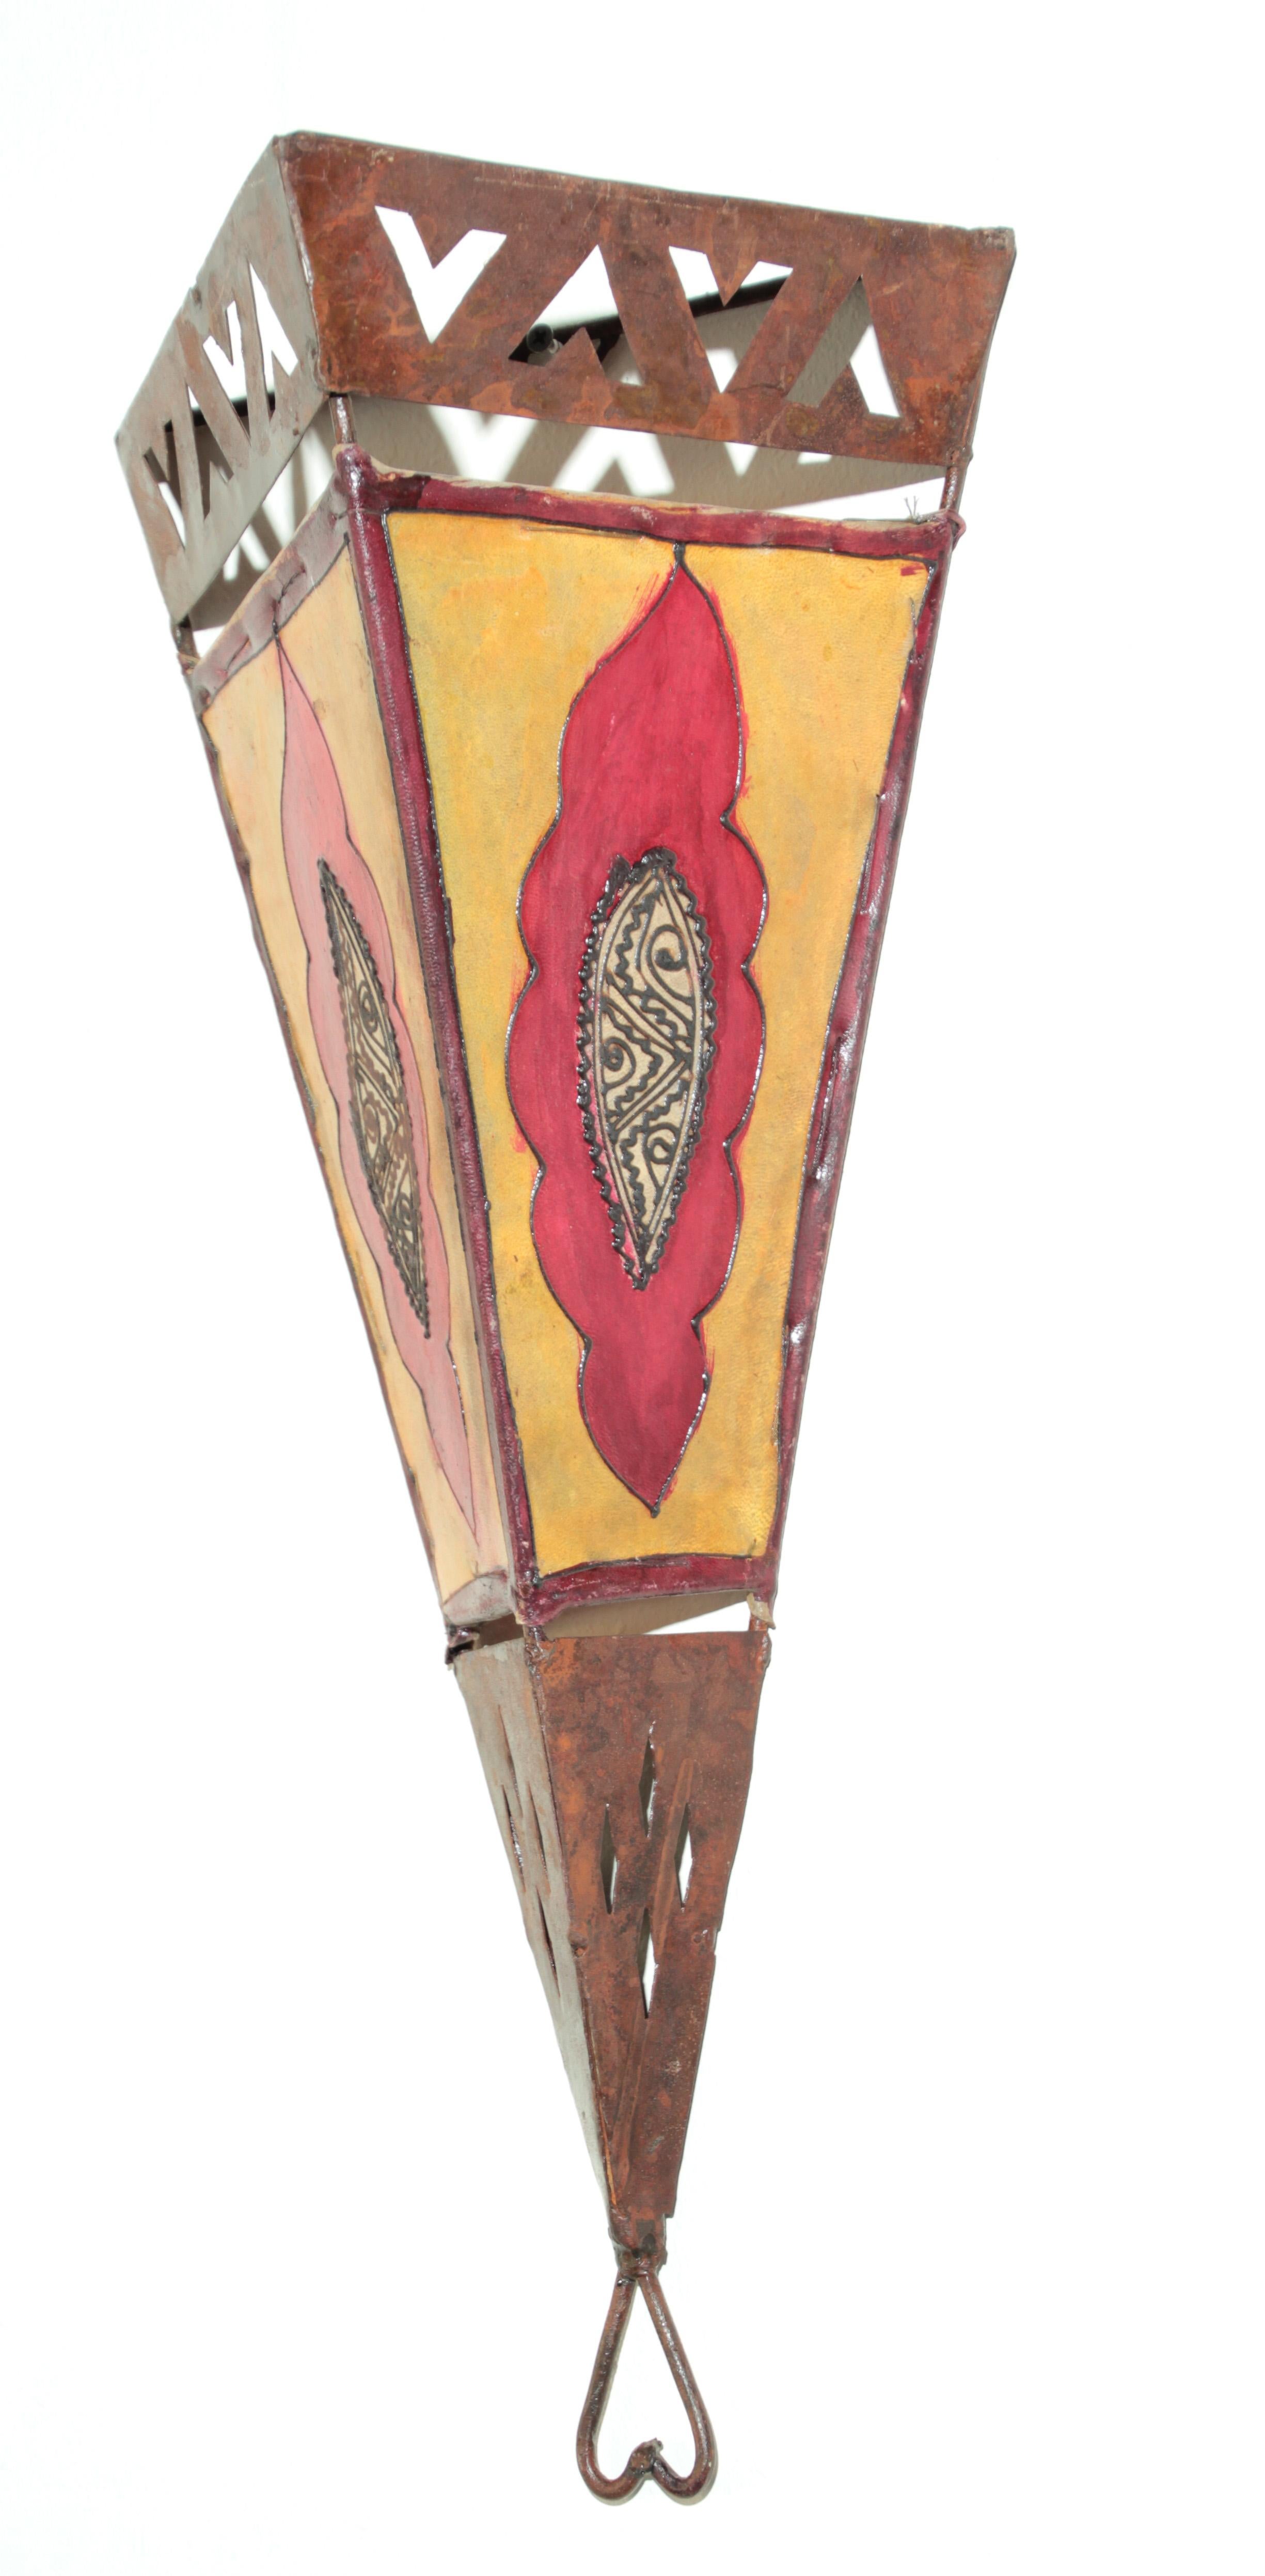 Grande applique murale en parchemin d'Art Tribal Africain présentant une grande forme de peau triangulaire cousue sur le fer et une surface peinte à la main.
Ces pièces d'art populaire vintage fabriquées à la main peuvent être utilisées comme